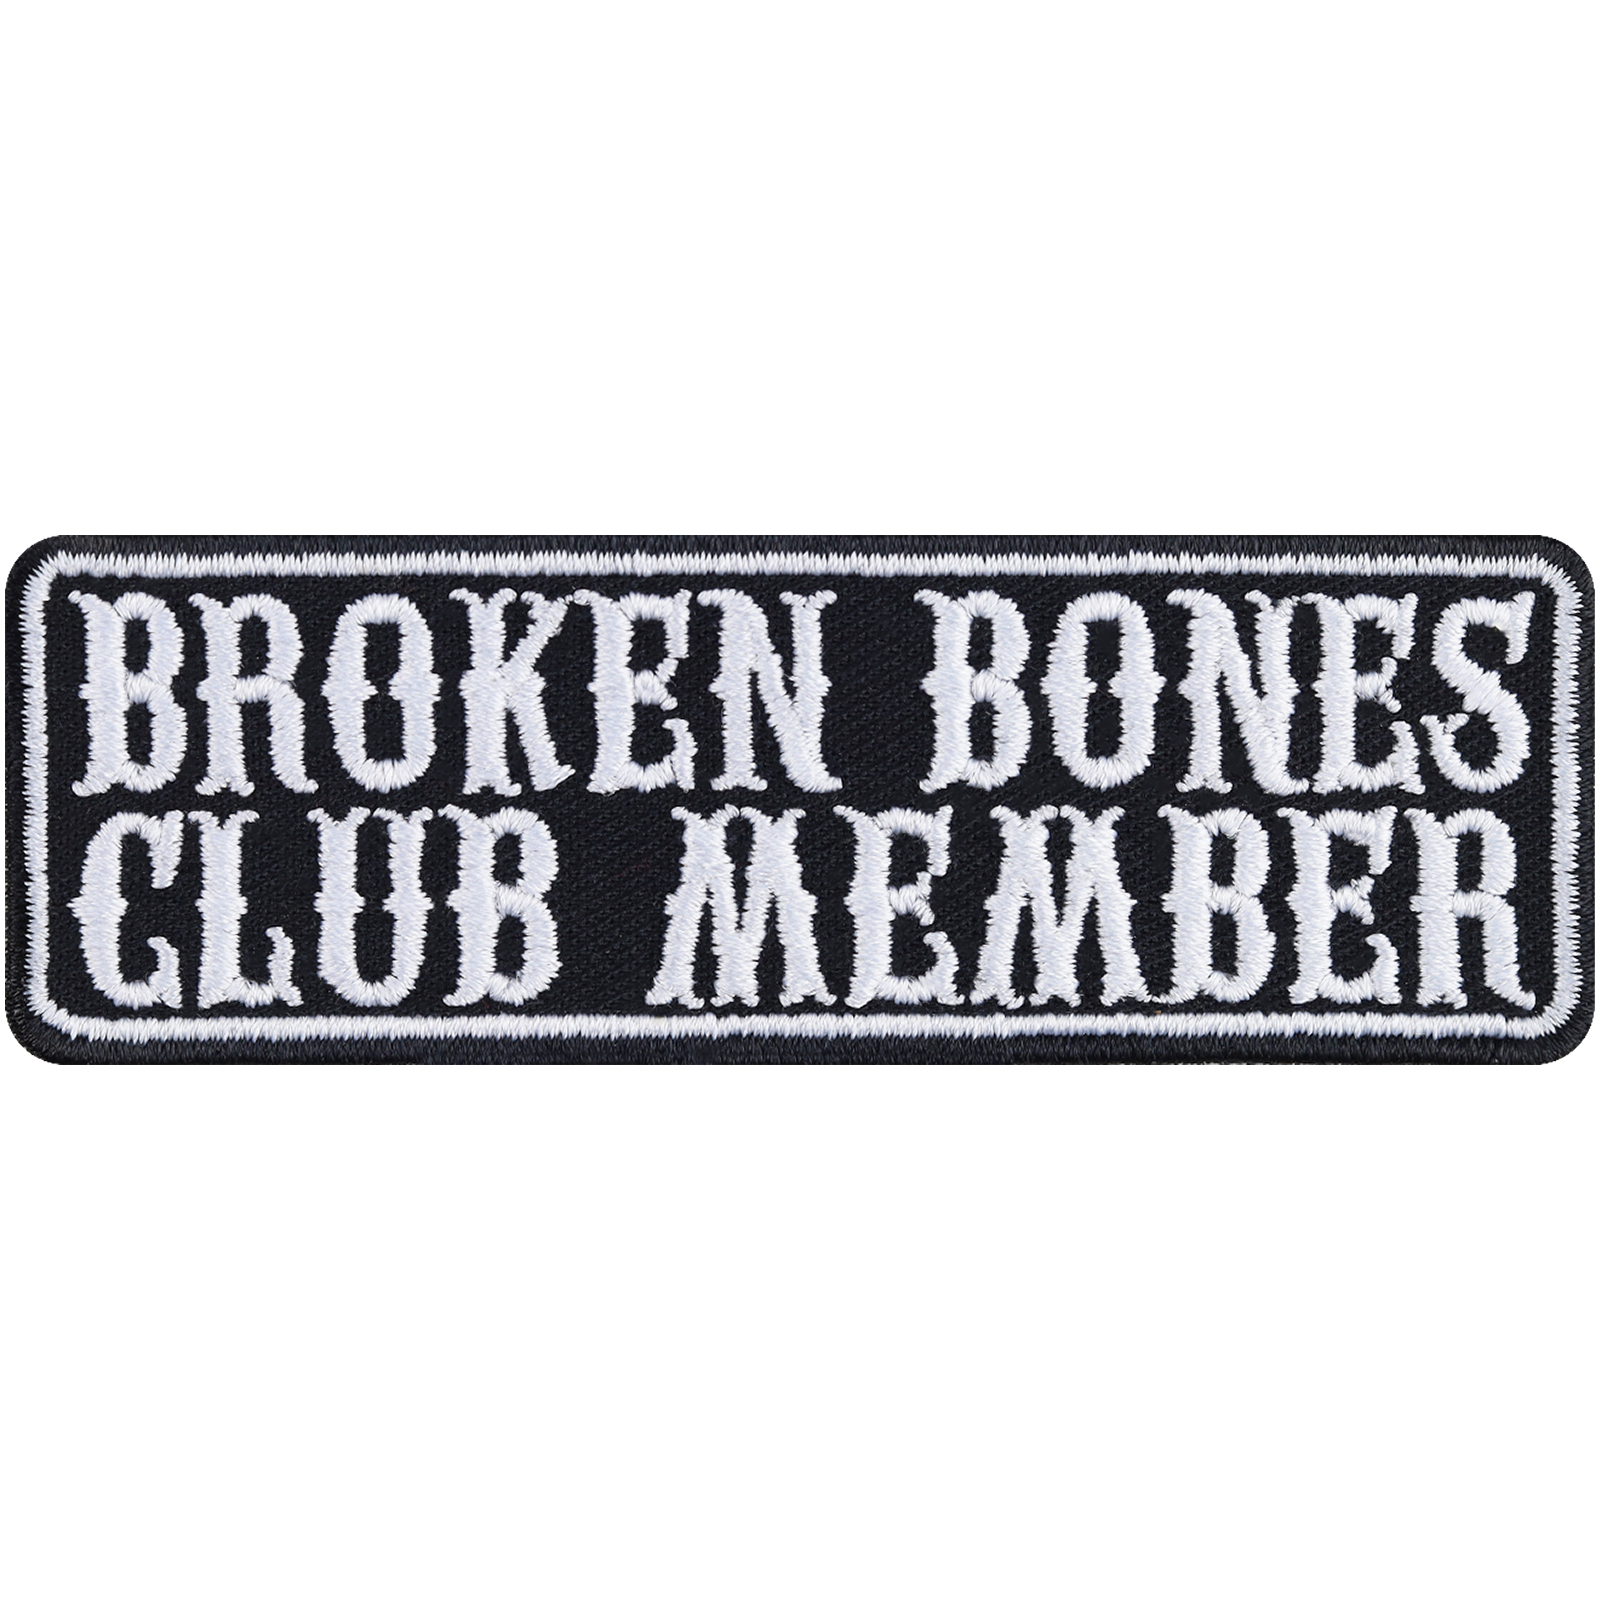 Broken bones club member - Patch